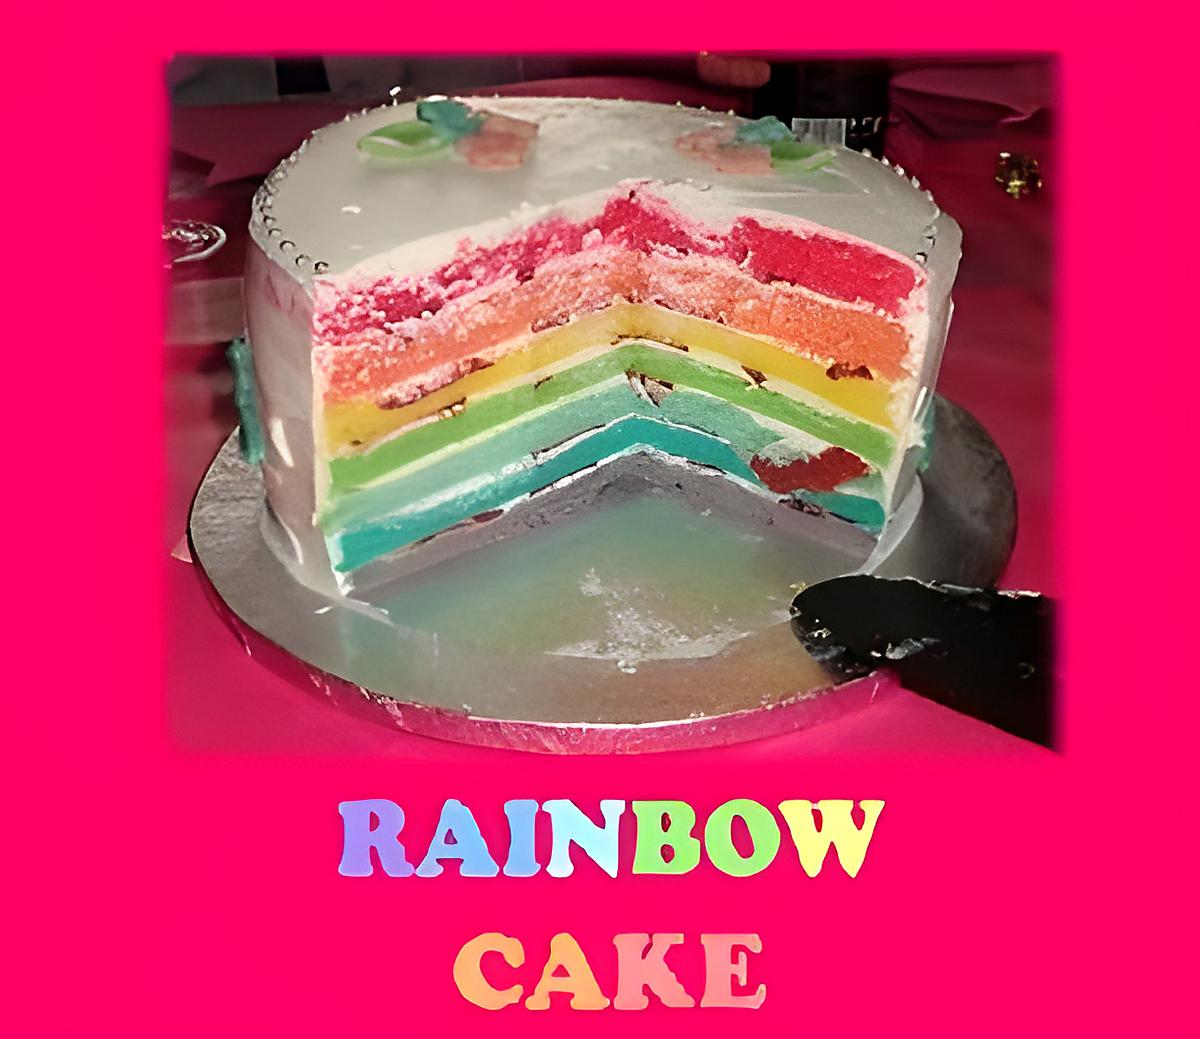 recette Rainbow Cake (Gâteau Arc en Ciel) CITRON - FRAISE